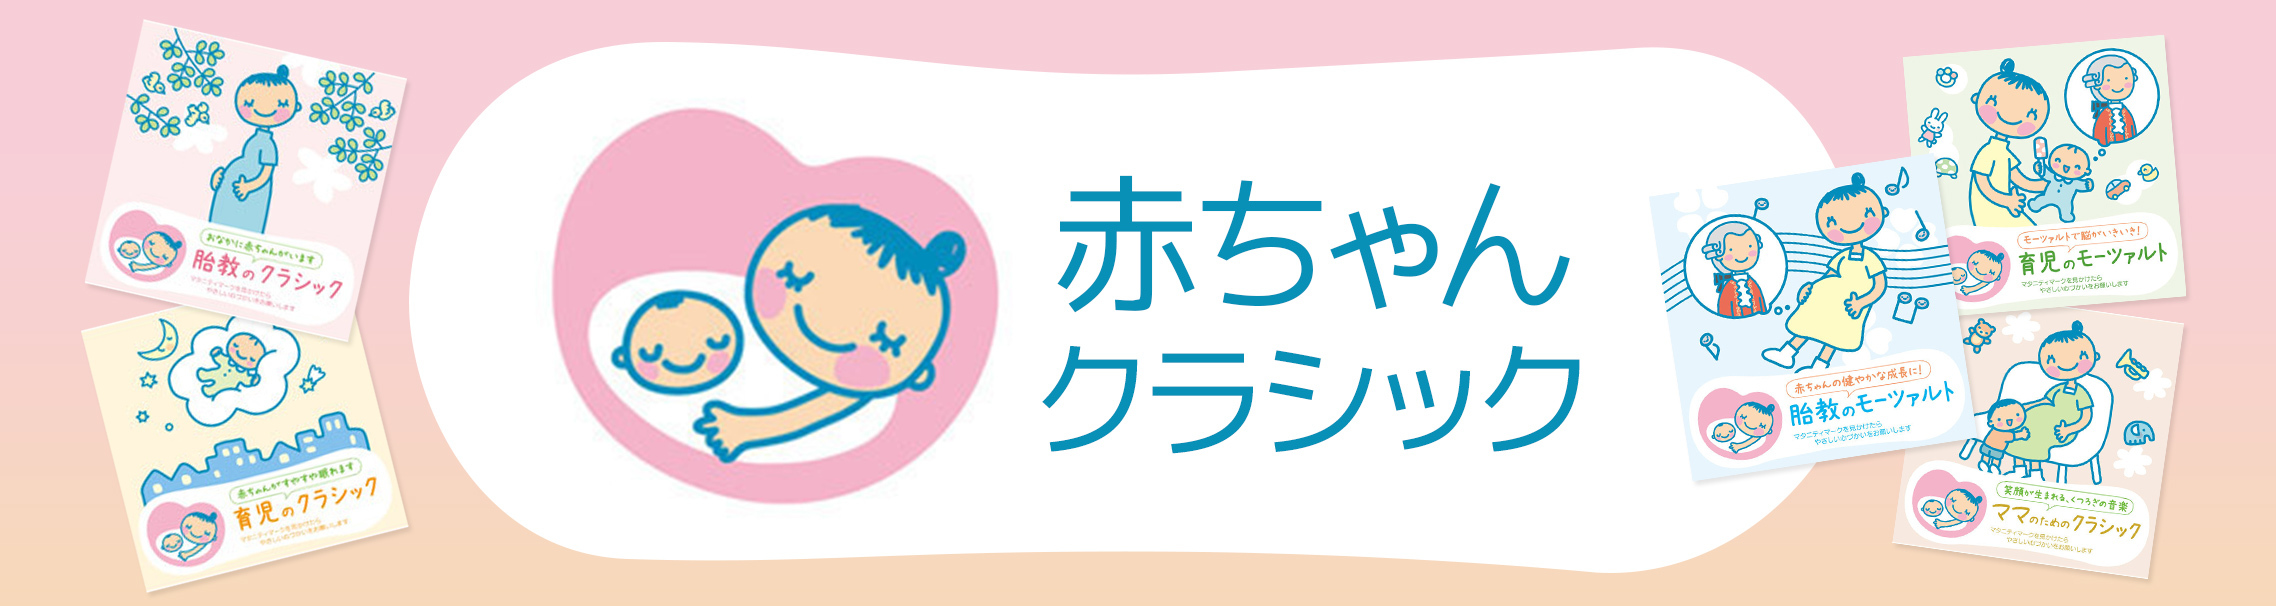 赤ちゃんクラシック | Warner Music Japan